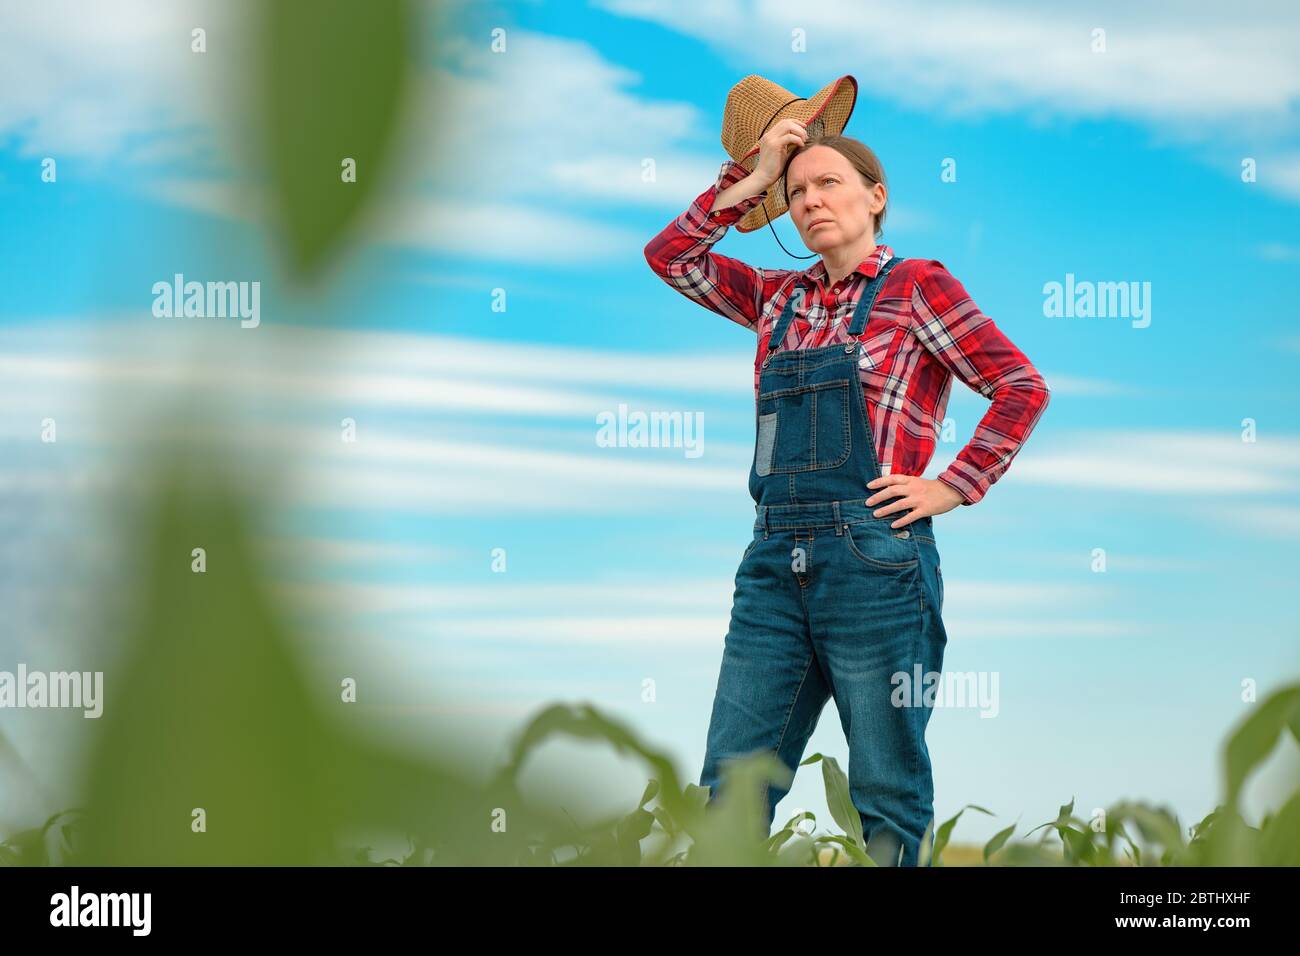 Agrarwissenschaftlerin, die im Maisfeld steht und junge grüne Maispflanzen betrachtet Stockfoto